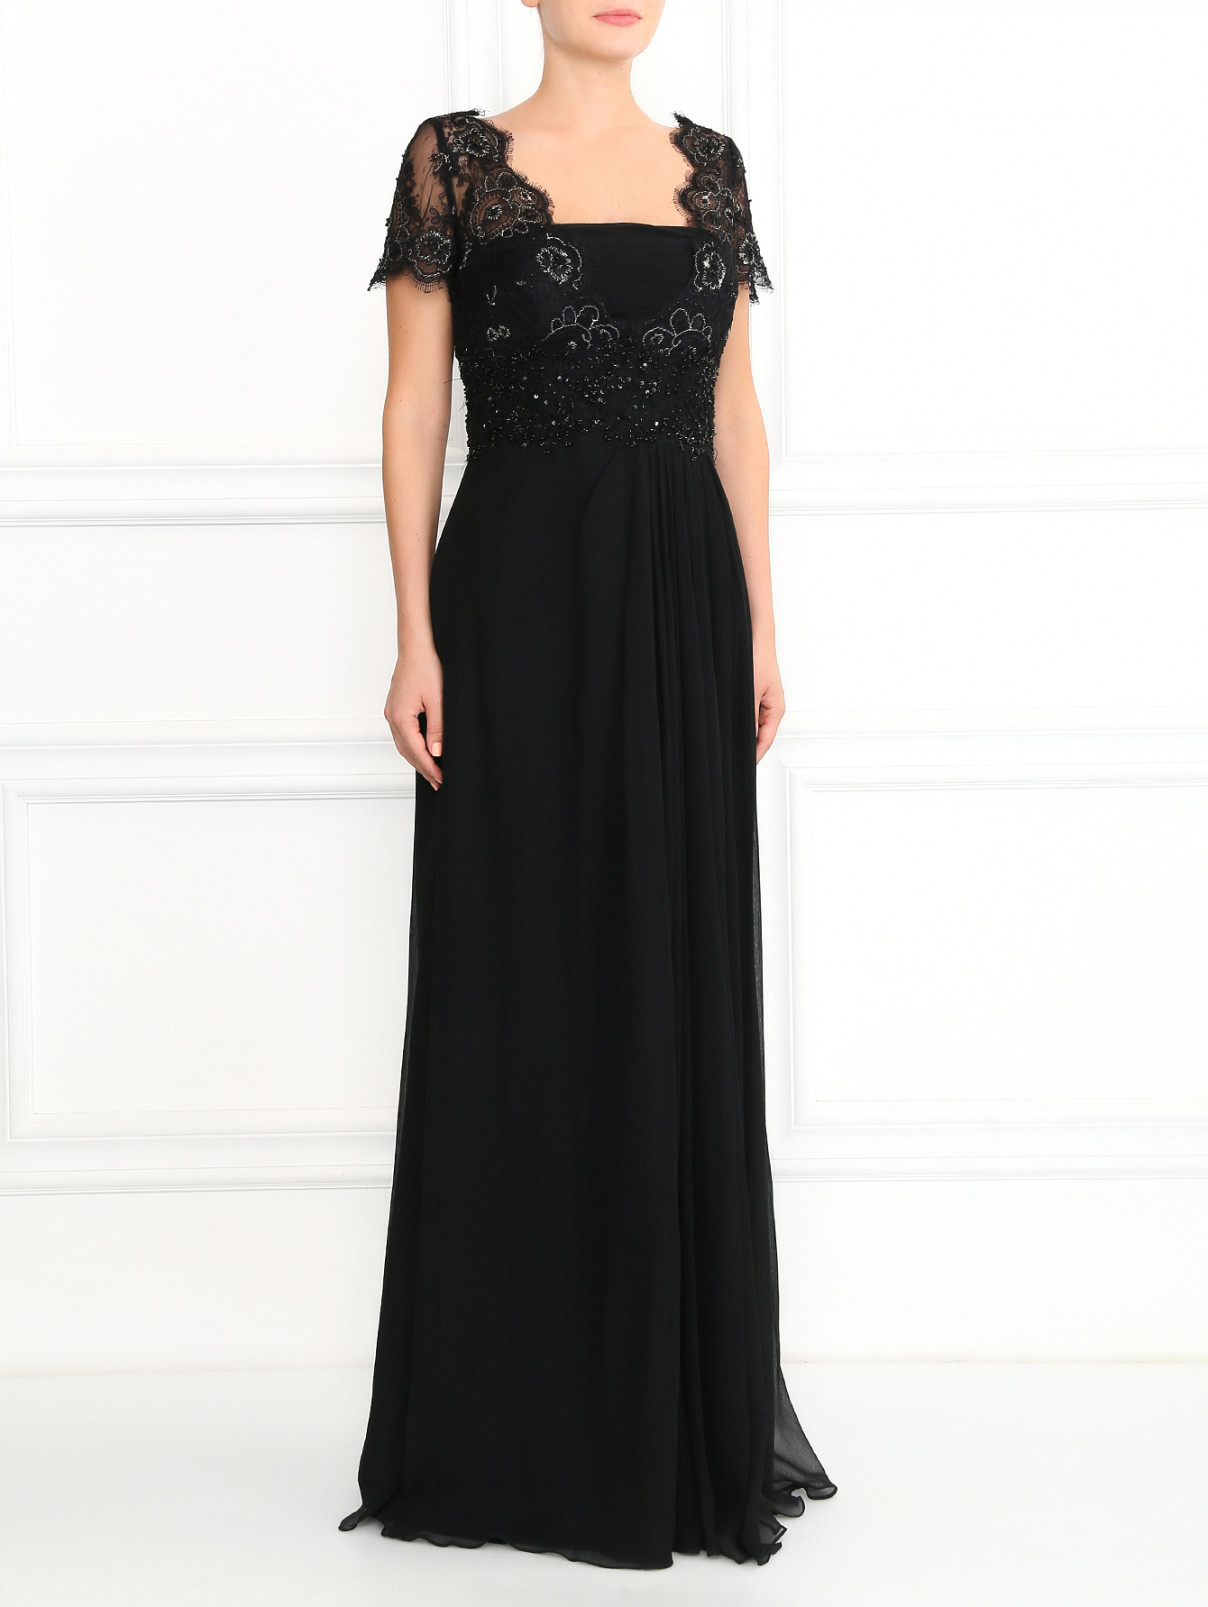 Платье-макси из шелка, декорированное кружевом и бисером Rosa Clara  –  Модель Верх-Низ  – Цвет:  Черный